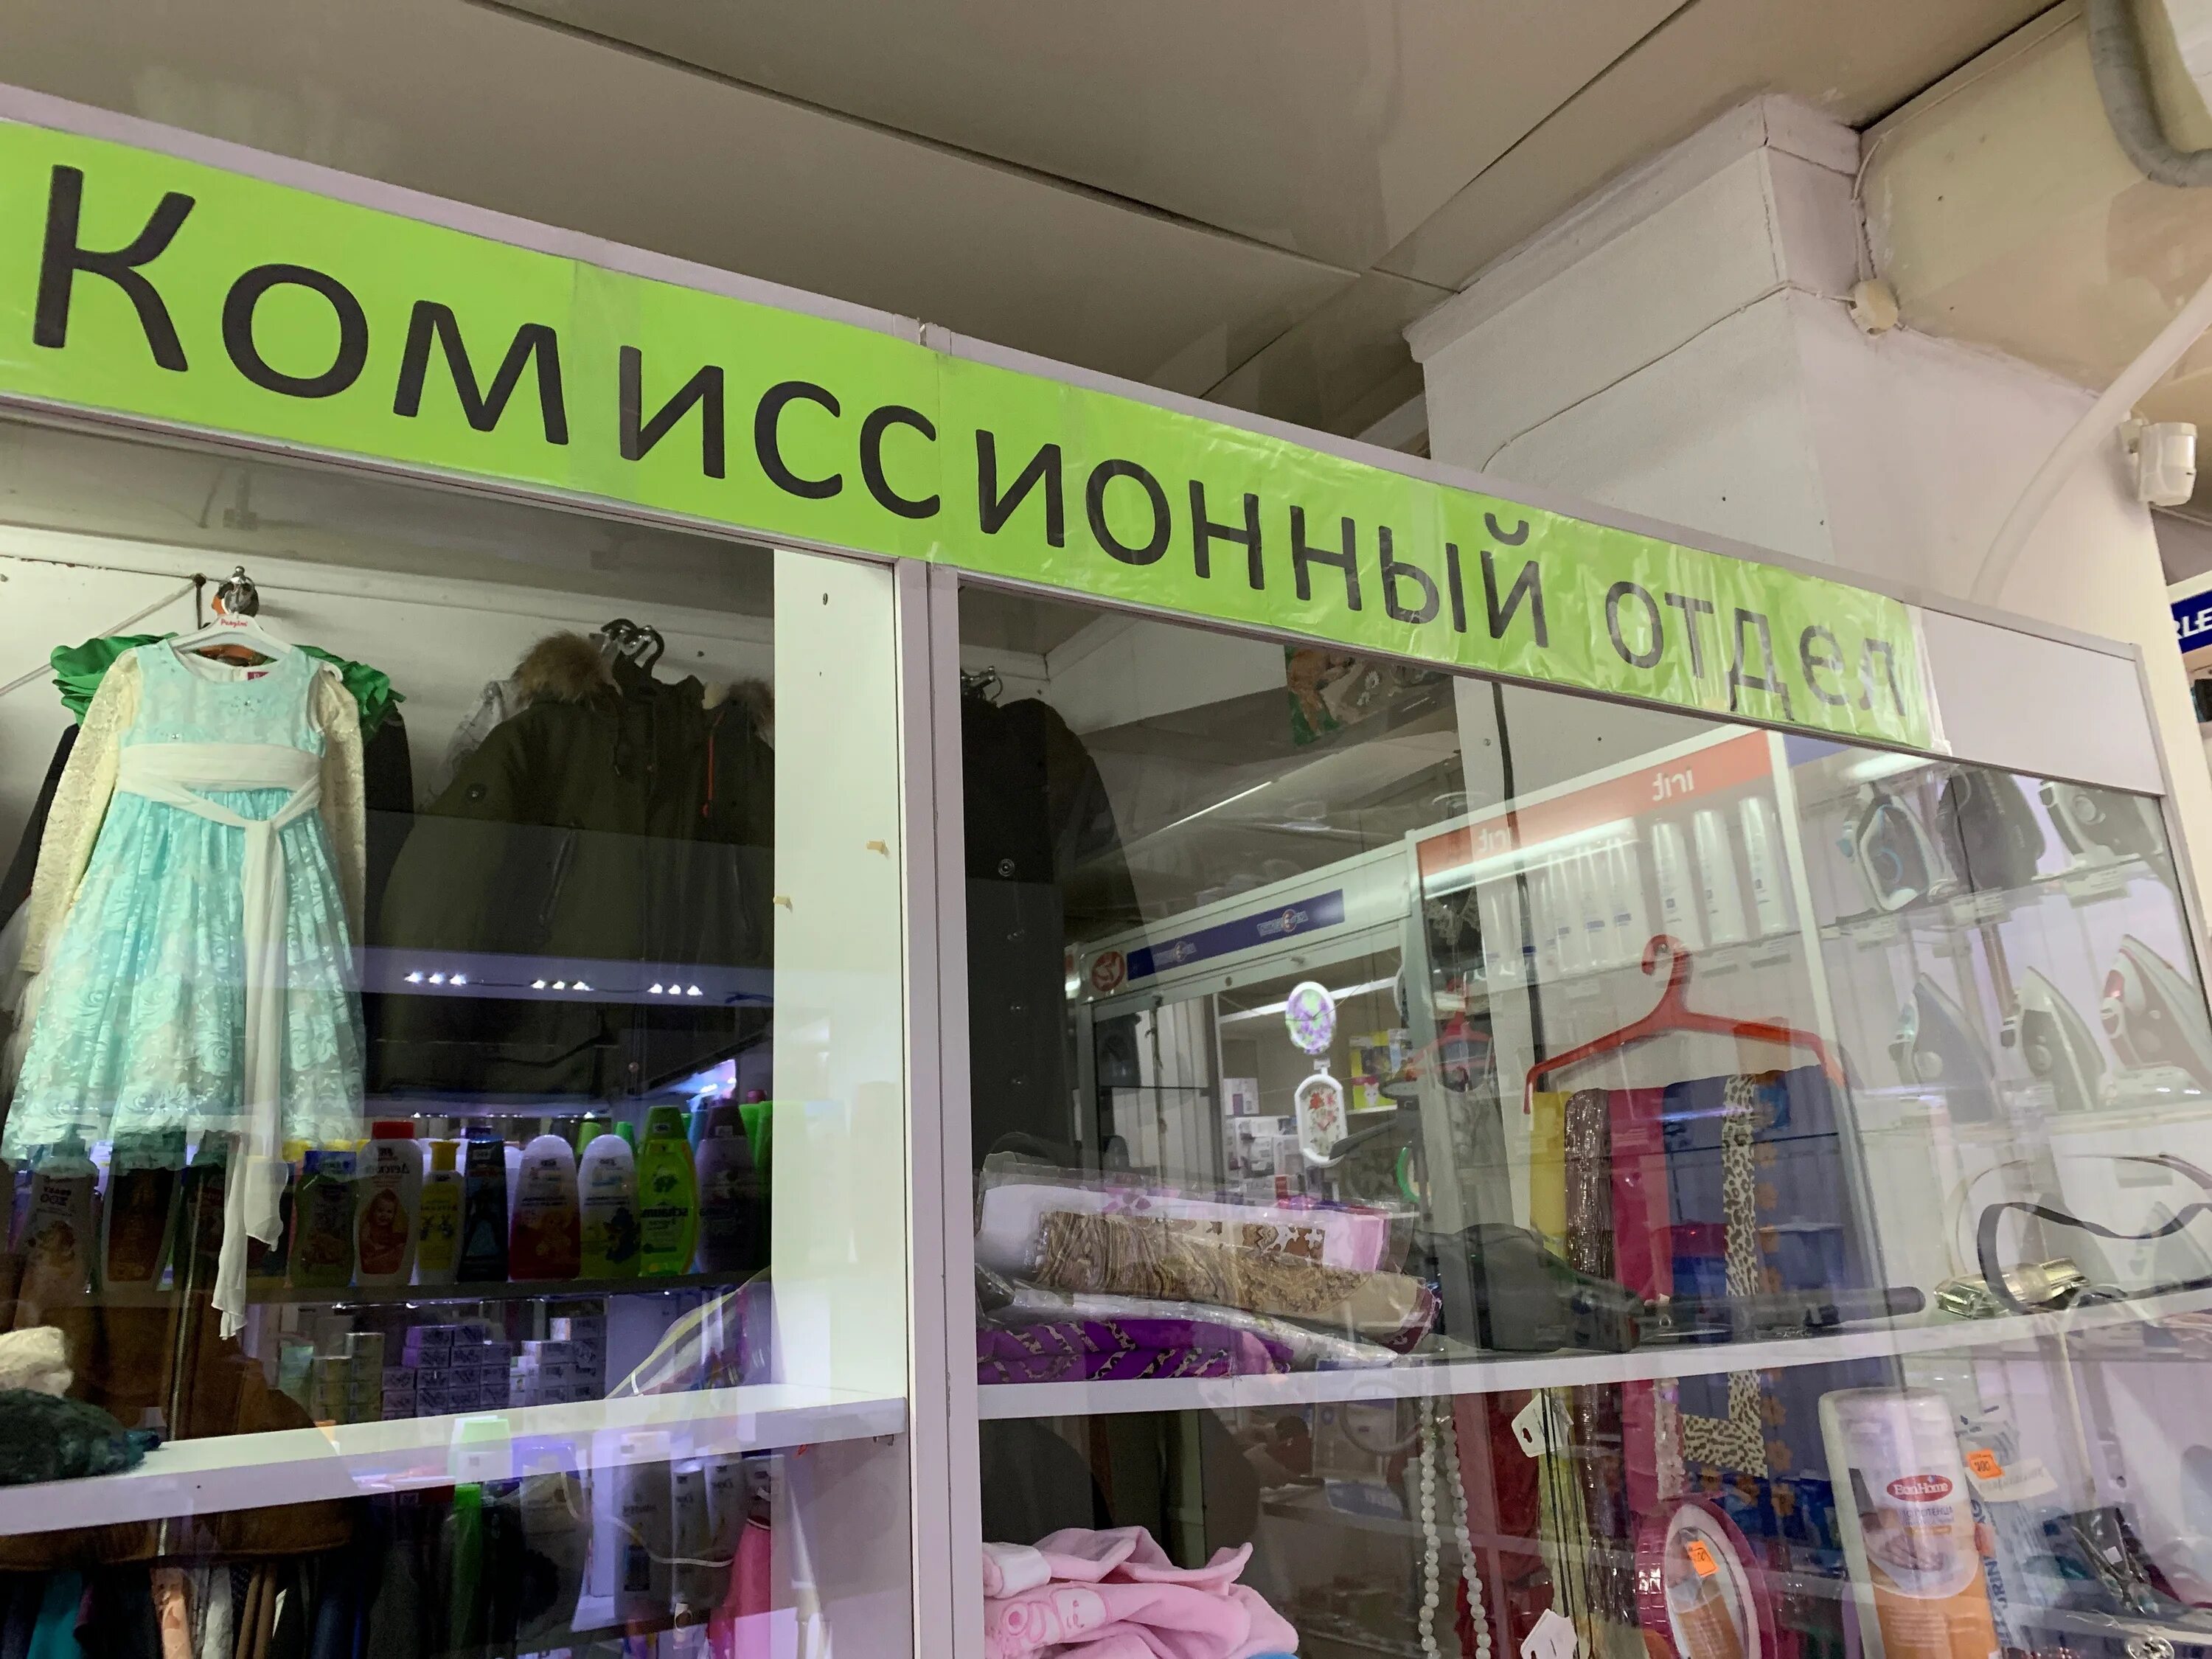 Комиссионный отдел. Комиссионный магазин Одинцово. Комиссионный магазин в Мурманске. Комиссионный магазин в Петропавловске Камчатском.